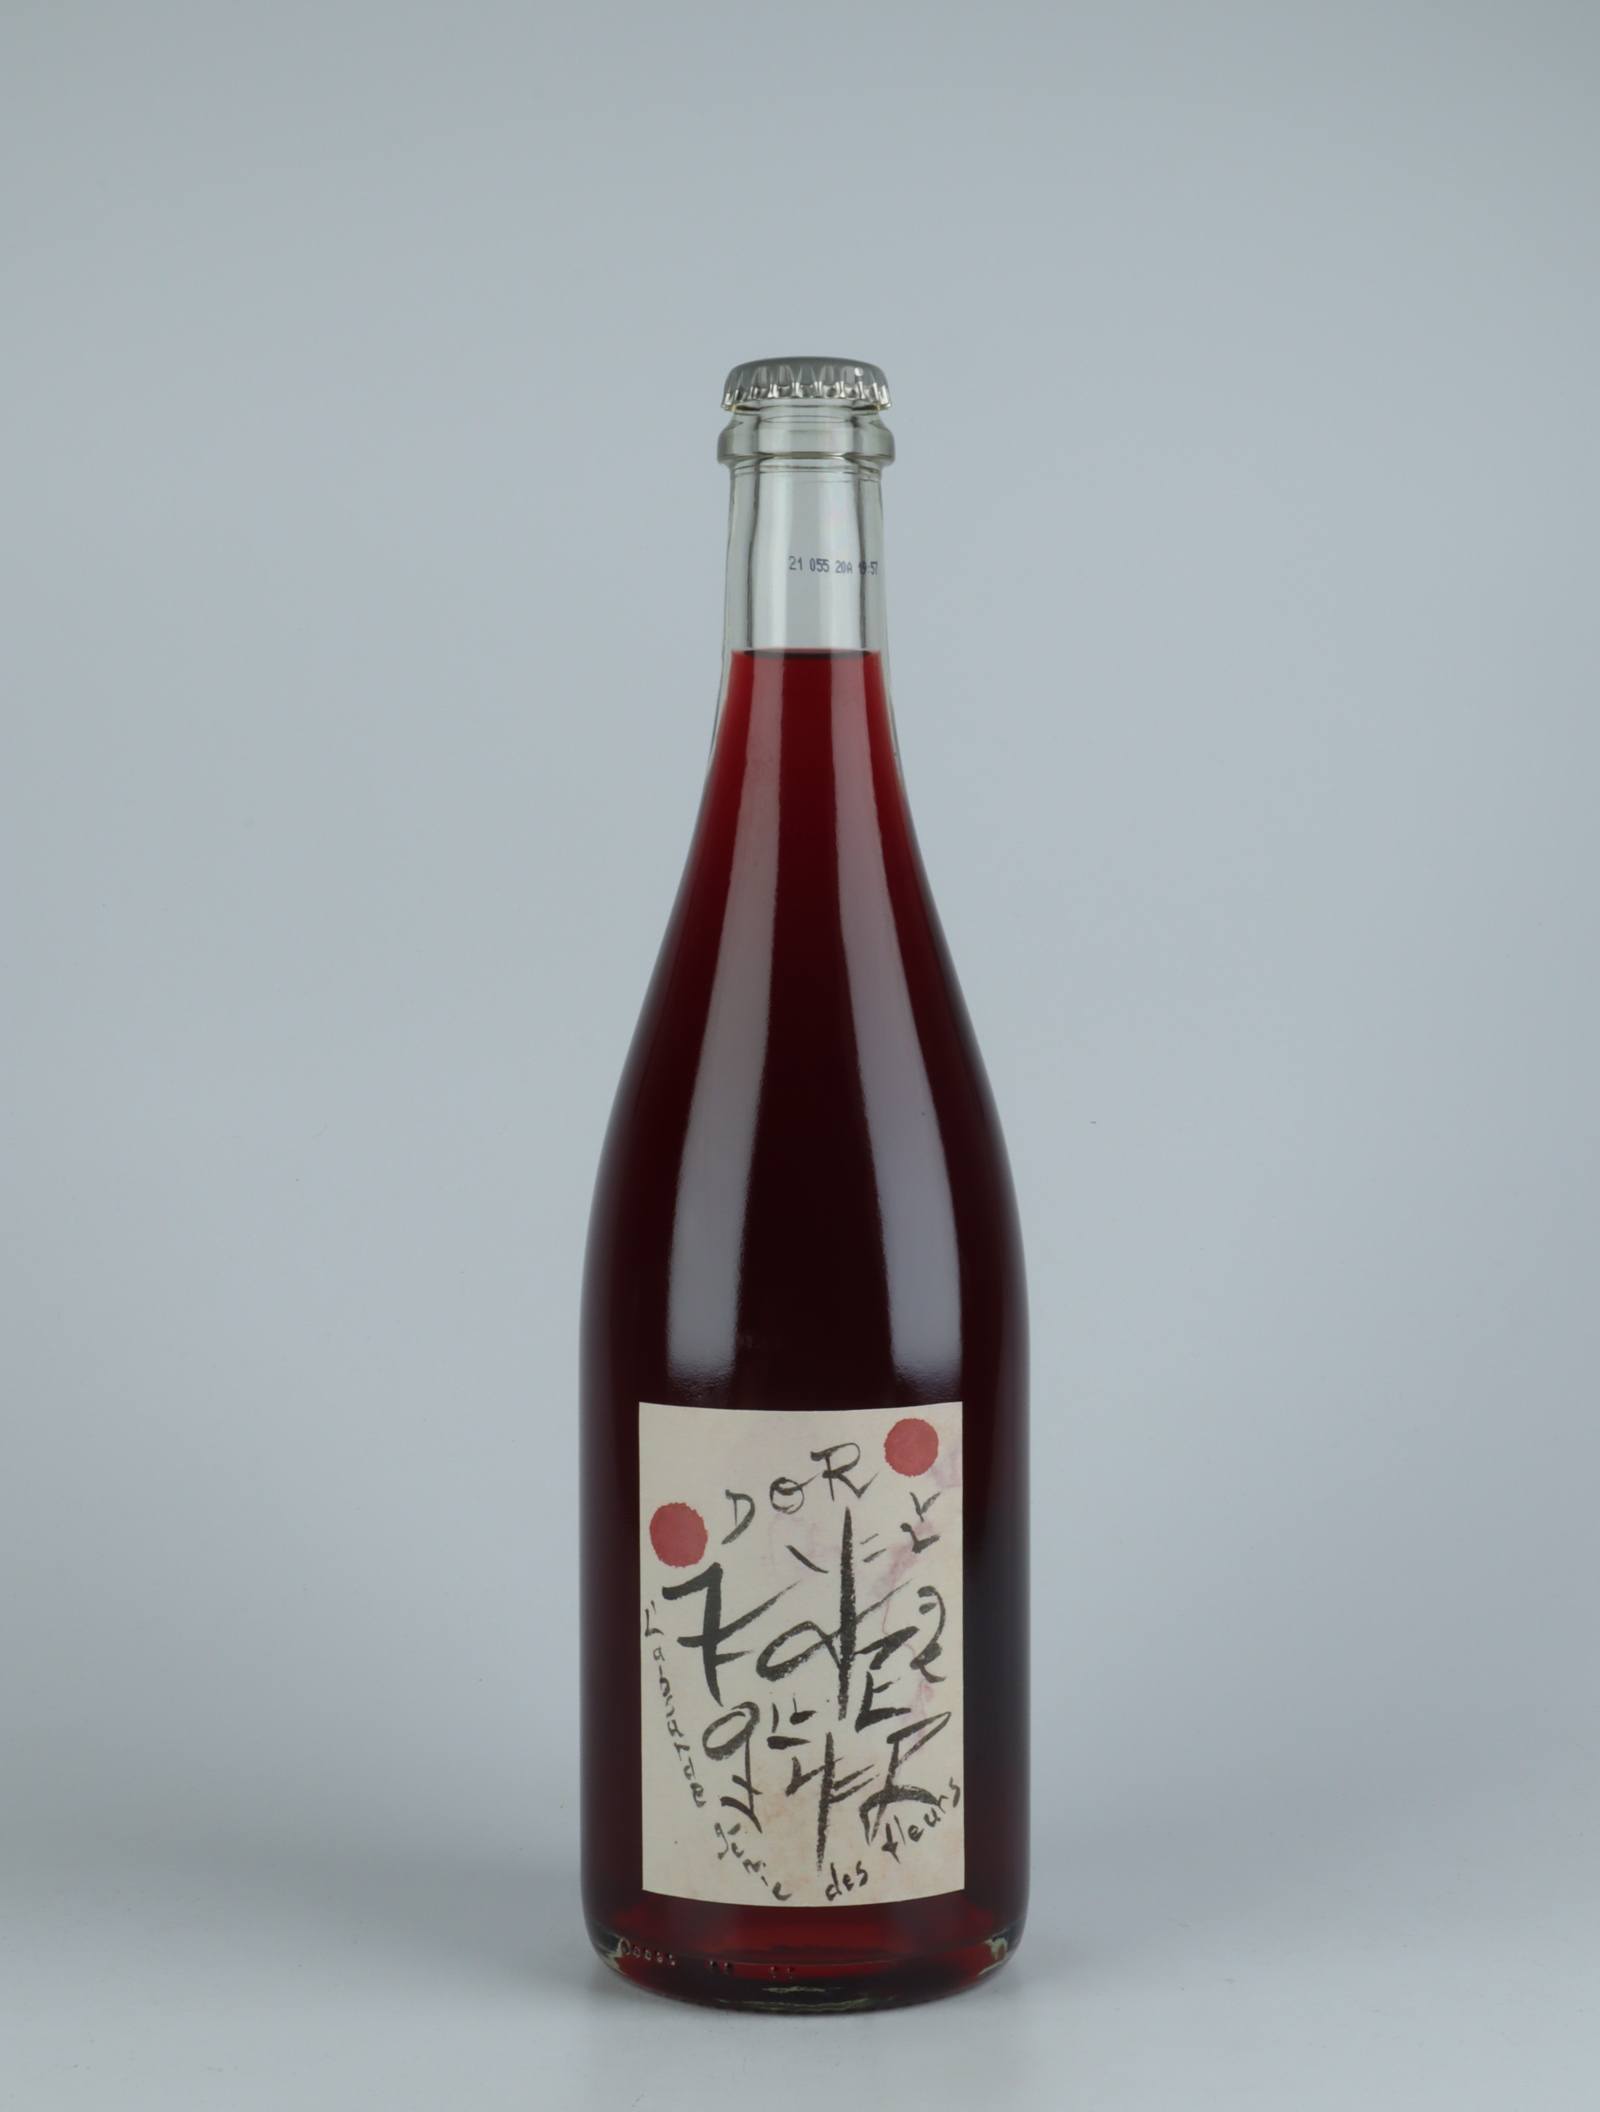 A bottle 2020 Dor Red wine from Absurde Génie des Fleurs, Languedoc in France